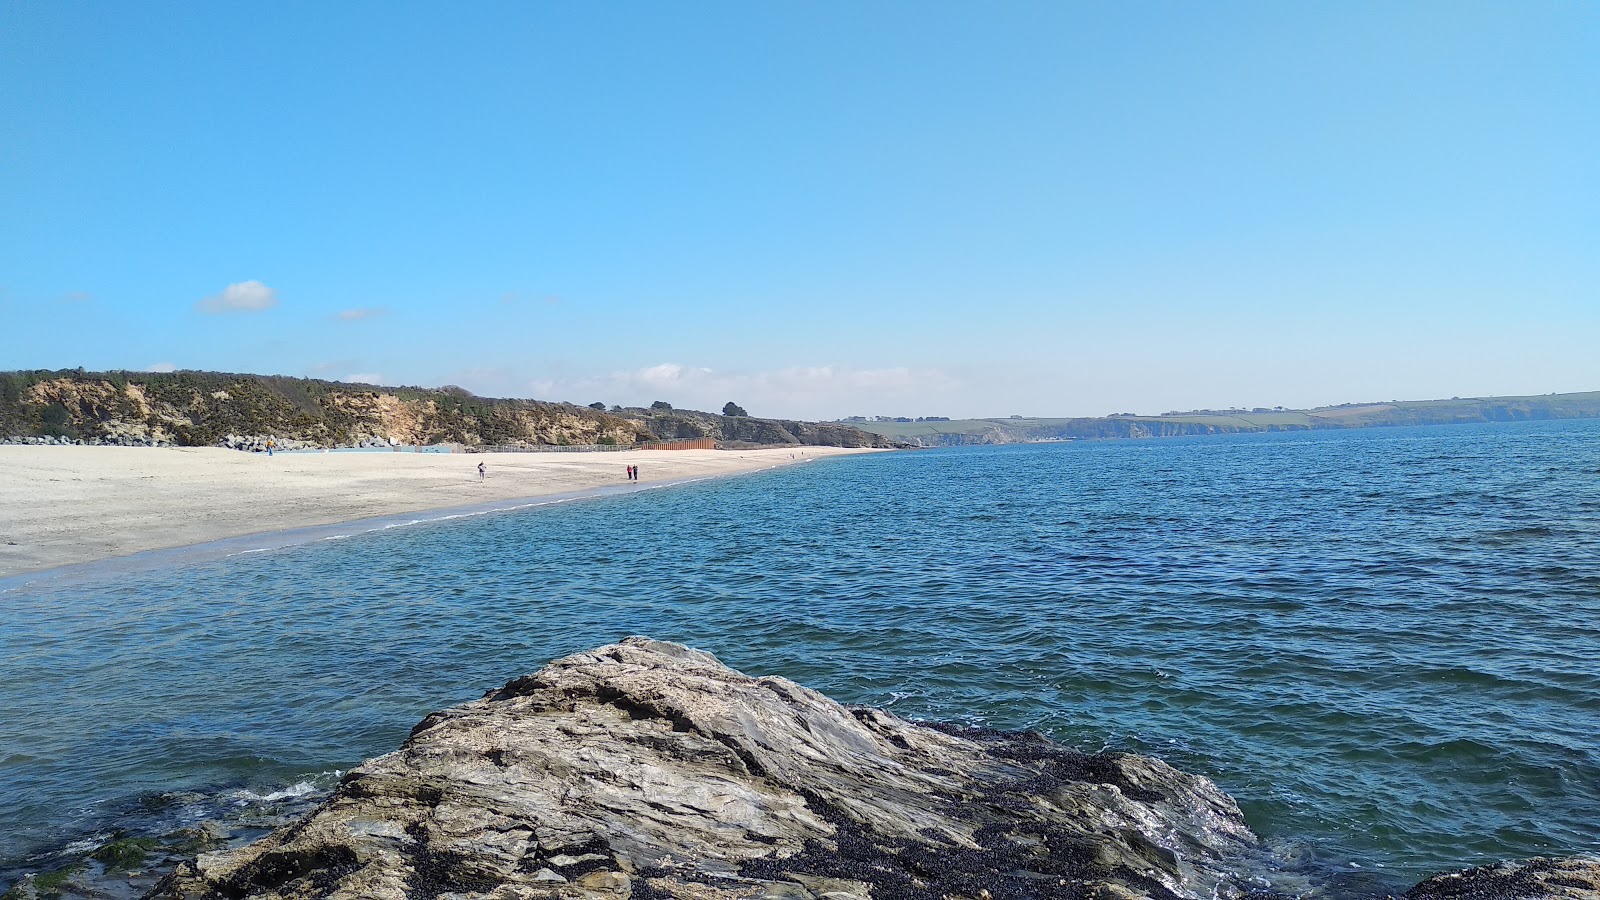 Foto af Carlyon beach - populært sted blandt afslapningskendere